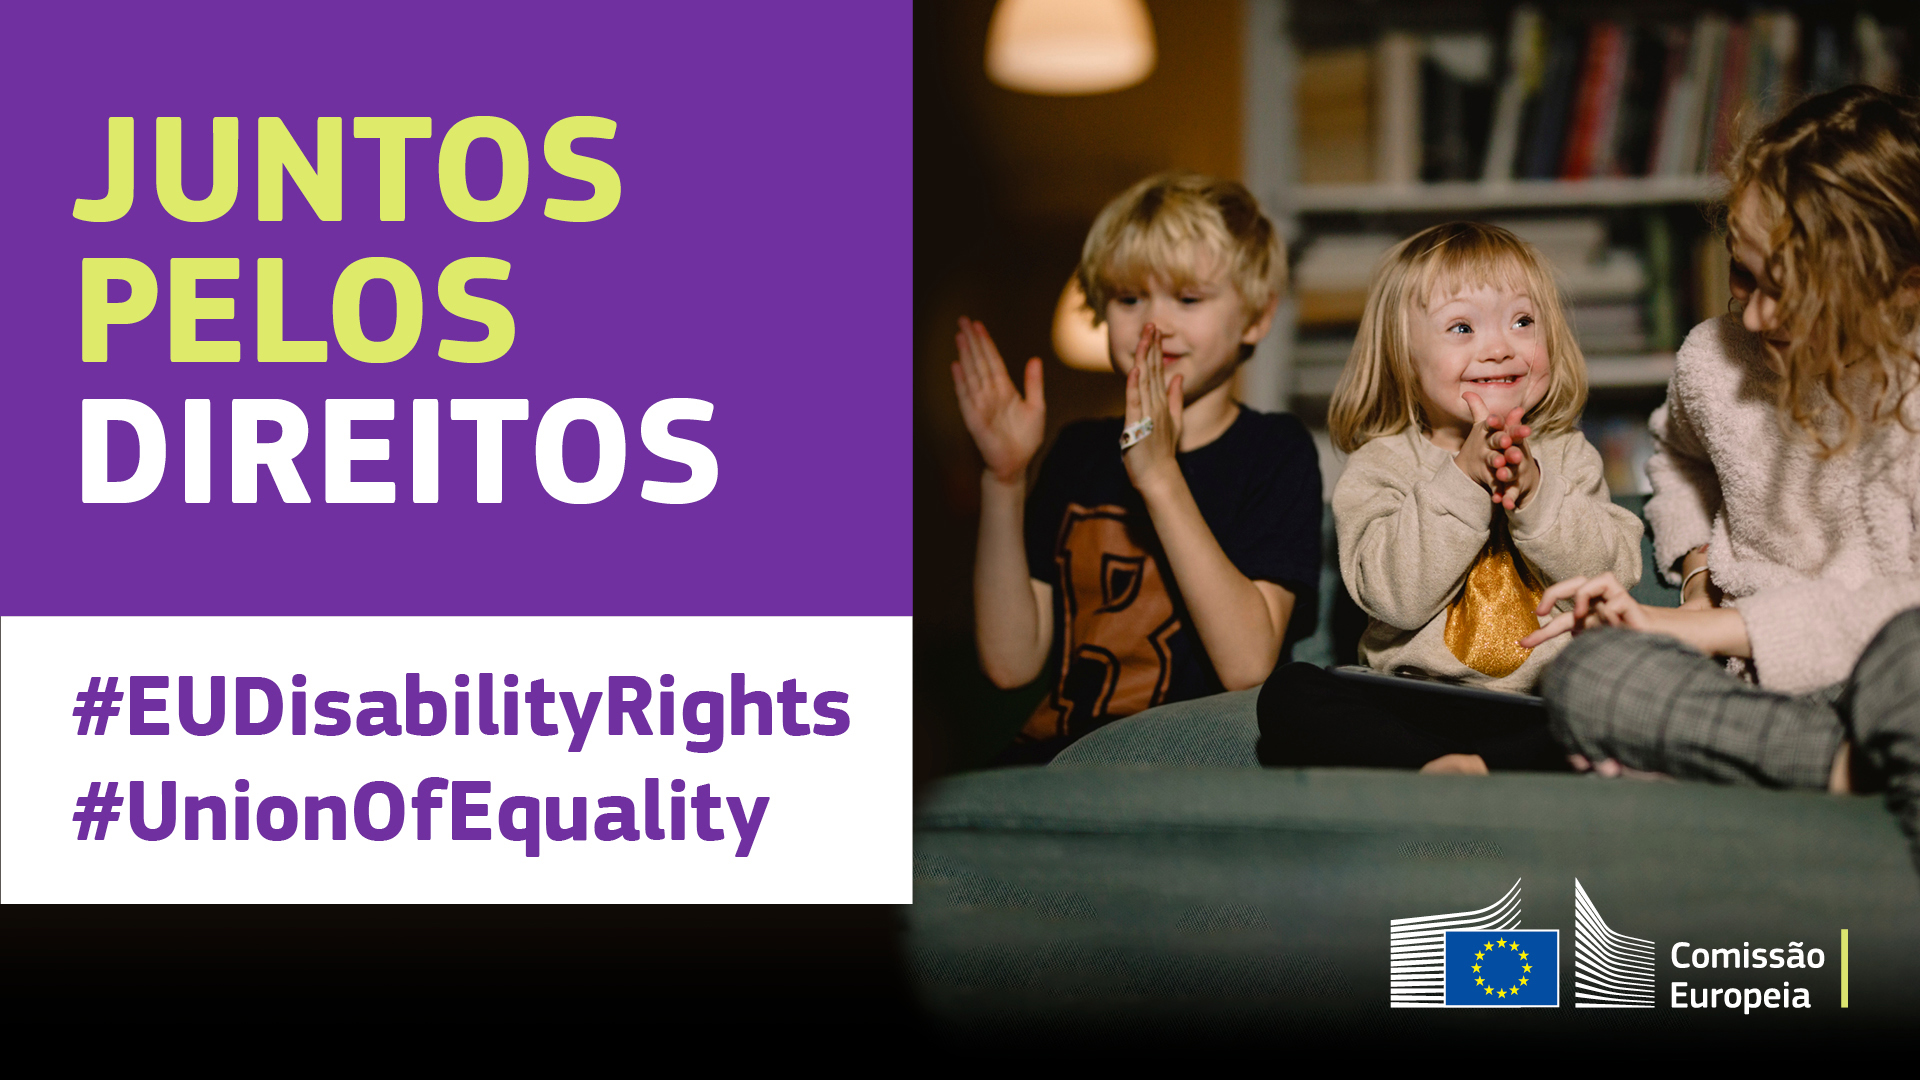 Três crianças felizes a brincar juntas. Uma tem síndrome de Down. Texto: juntos pelos direitos, #EUDisabilityRights, #UnionOfEquality.